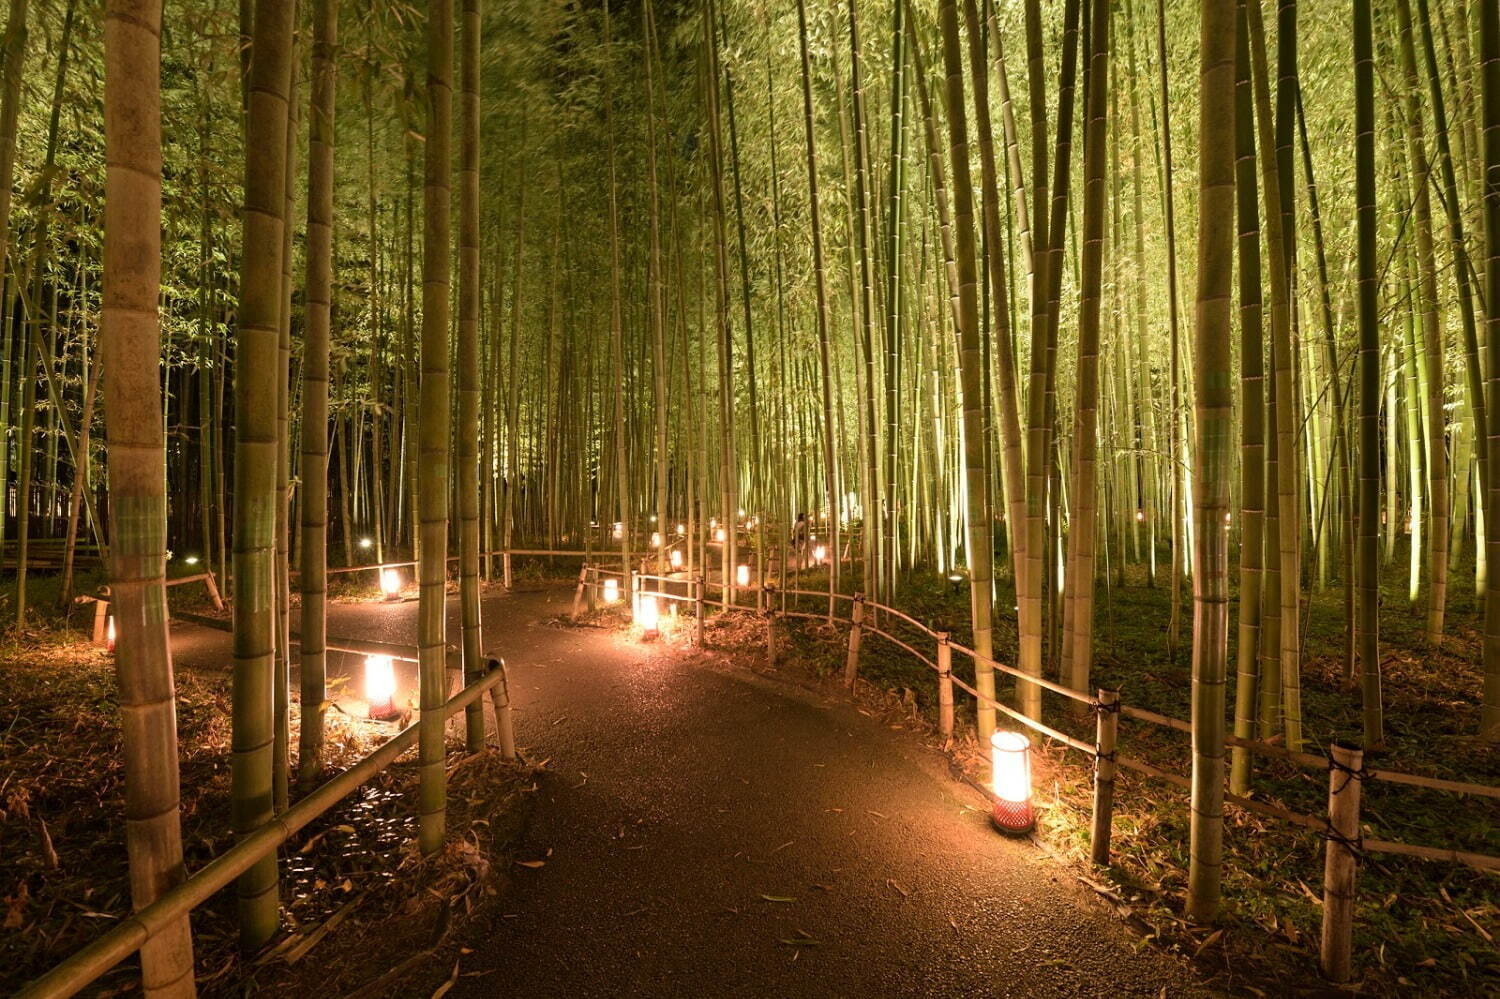 京都 嵐山花灯路 21 最後の開催 渡月橋や竹林の小径のライトアップ ファッションプレス